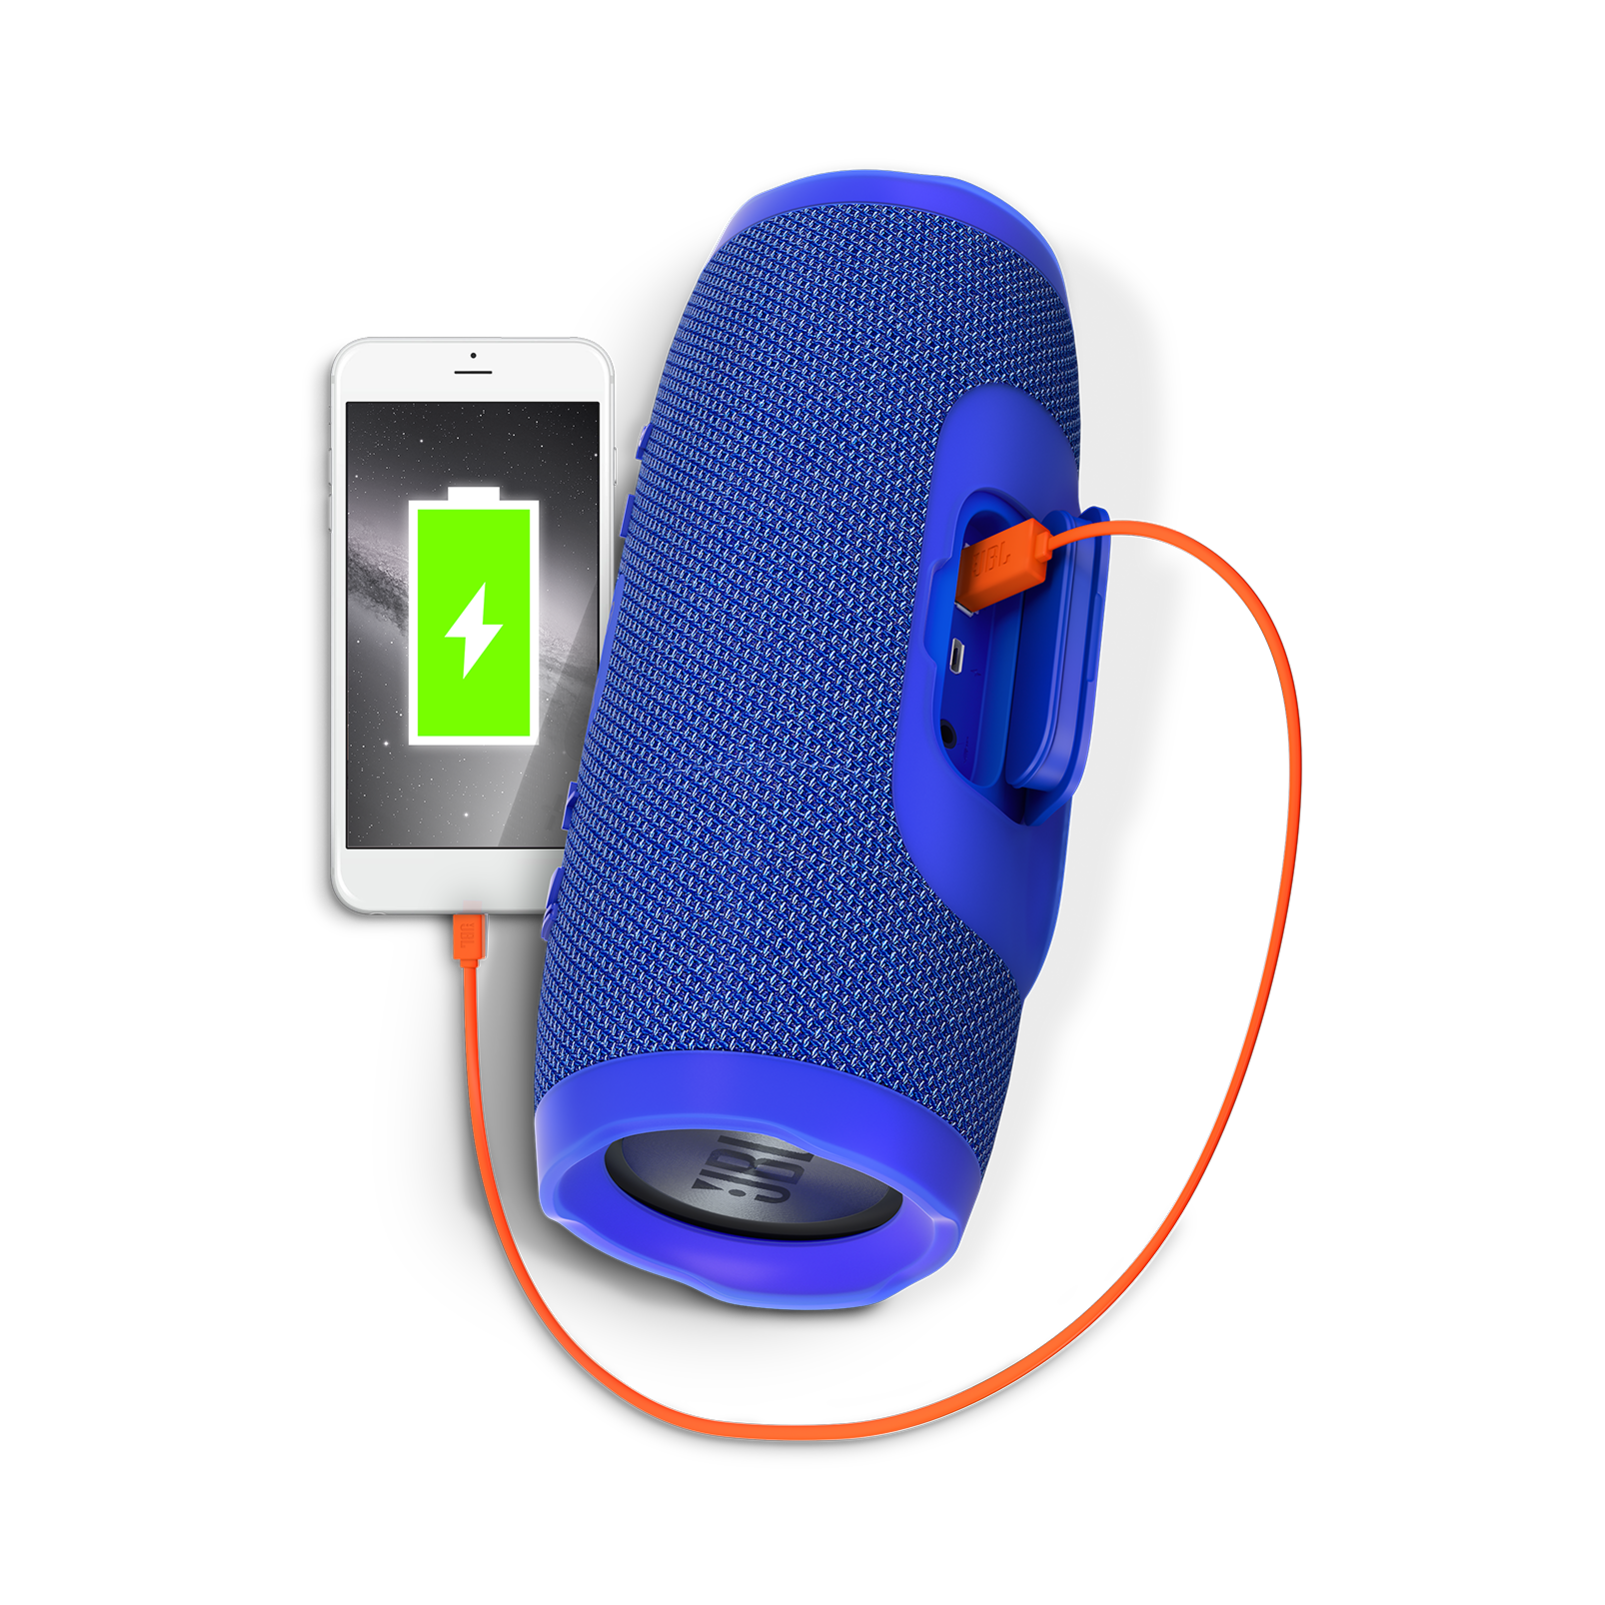 JBL Charge 3 | Waterproof Portable Bluetooth Speaker